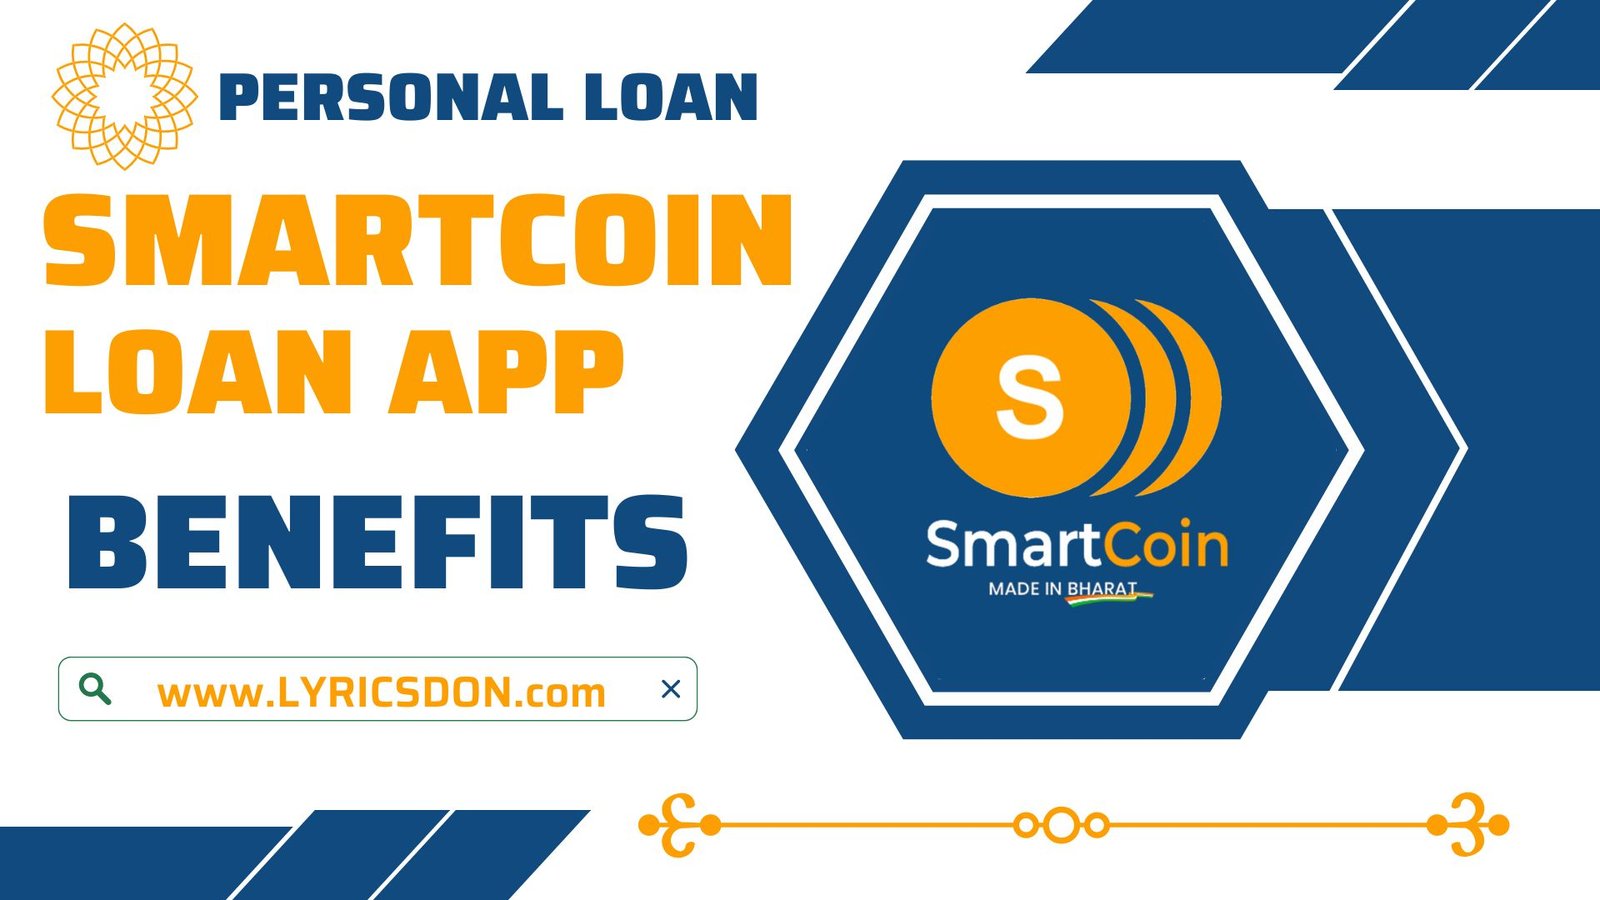 SmartCoin Loan App Benefits